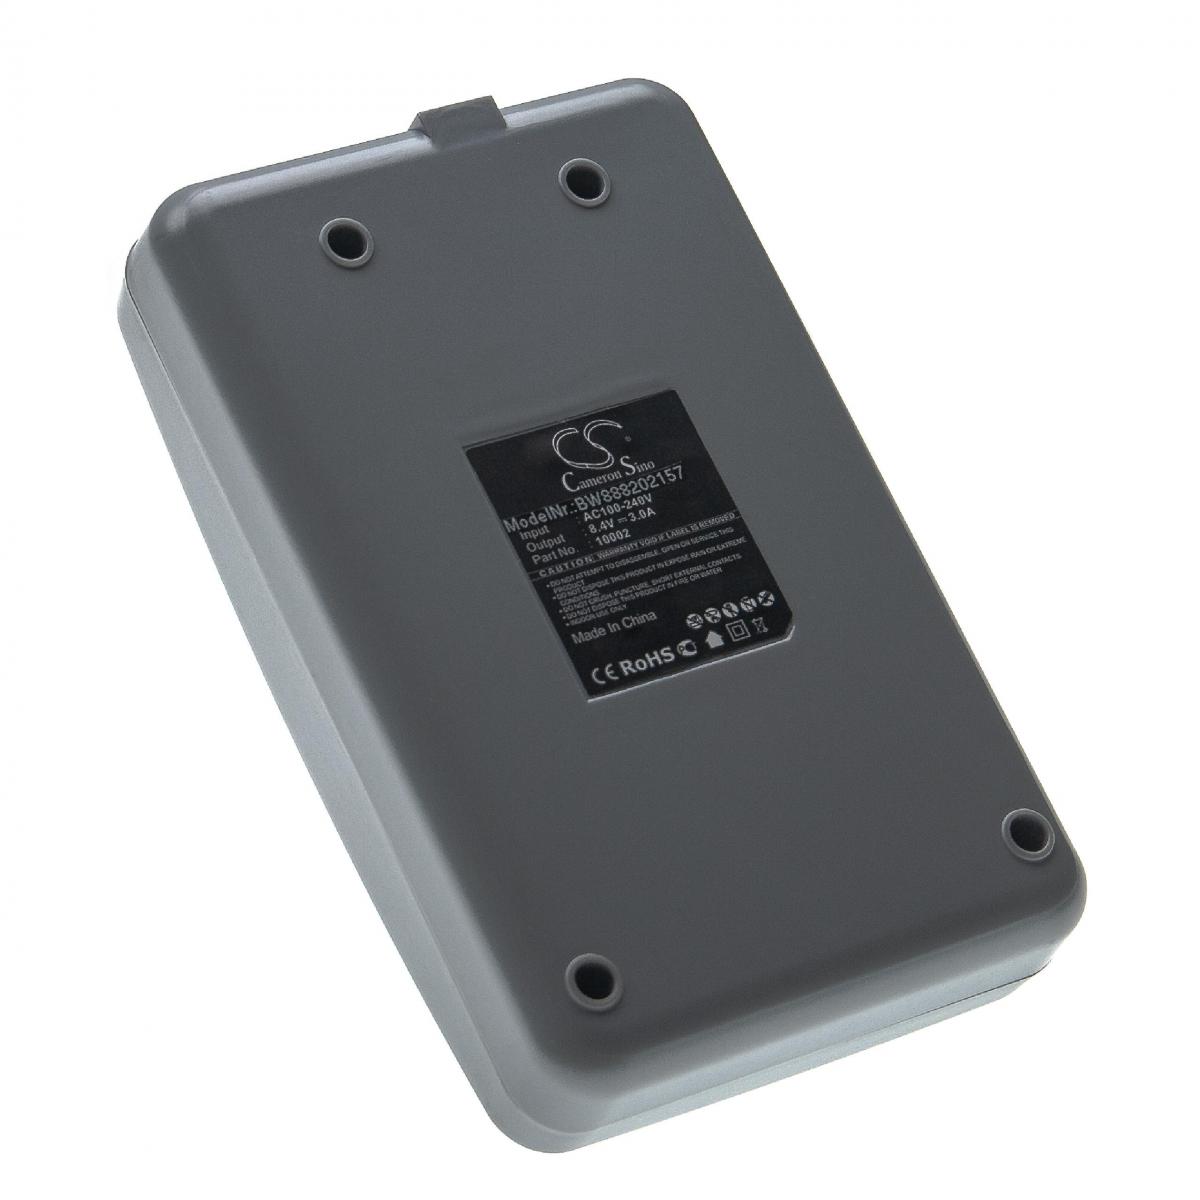 Vhbw - vhbw Chargeur compatible Pentax GPS RTK appareil de mesure - gris, plastique - Piles rechargeables